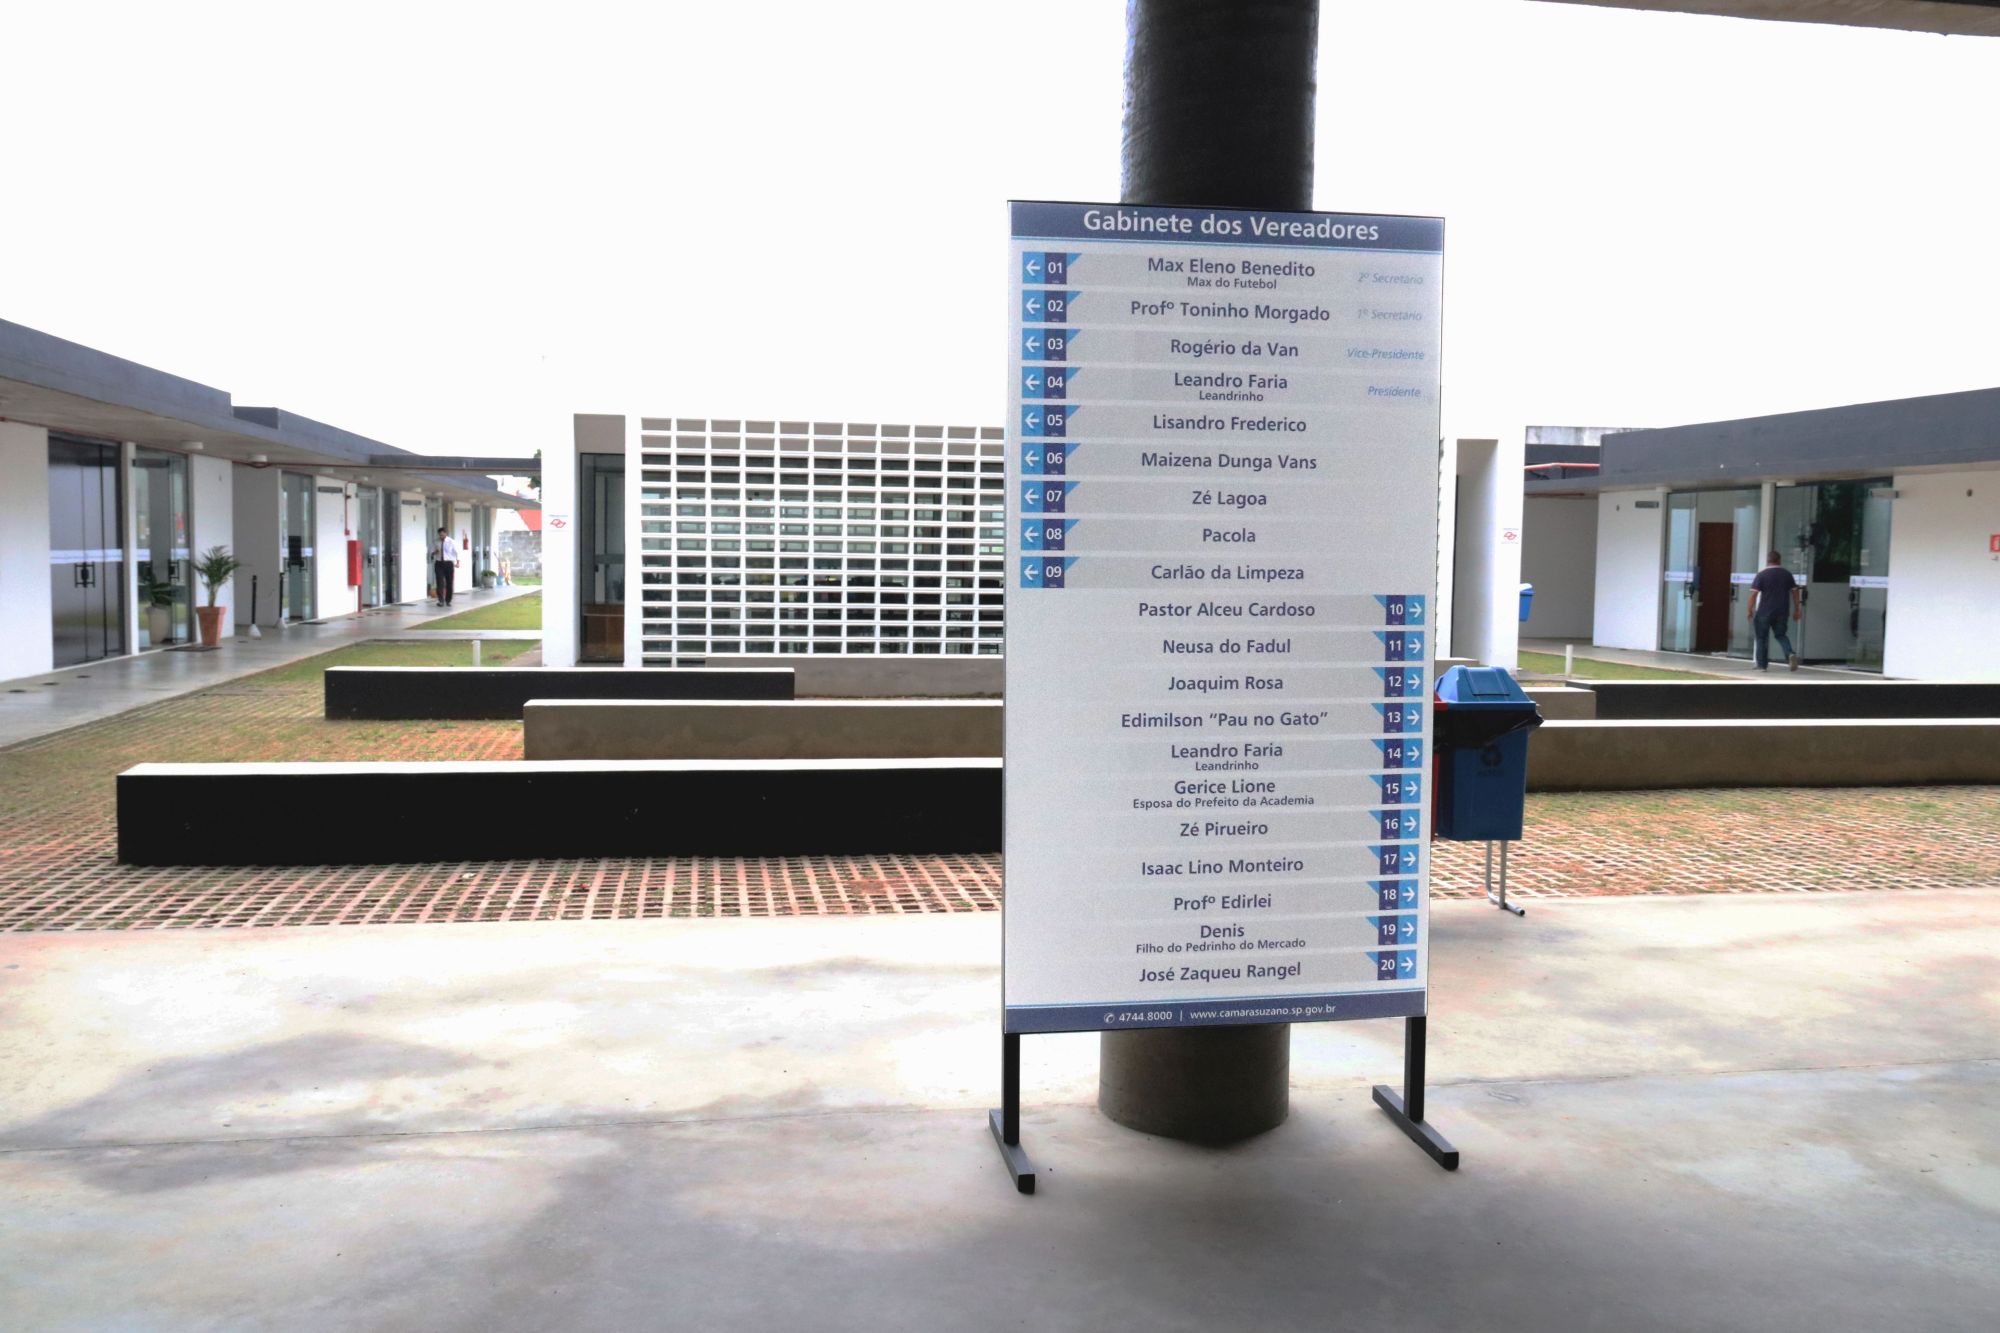 Foto da área interna da Câmara onde temos em destaque a placa informativa com os nomes dos vereadores e os números de seus gabinetes